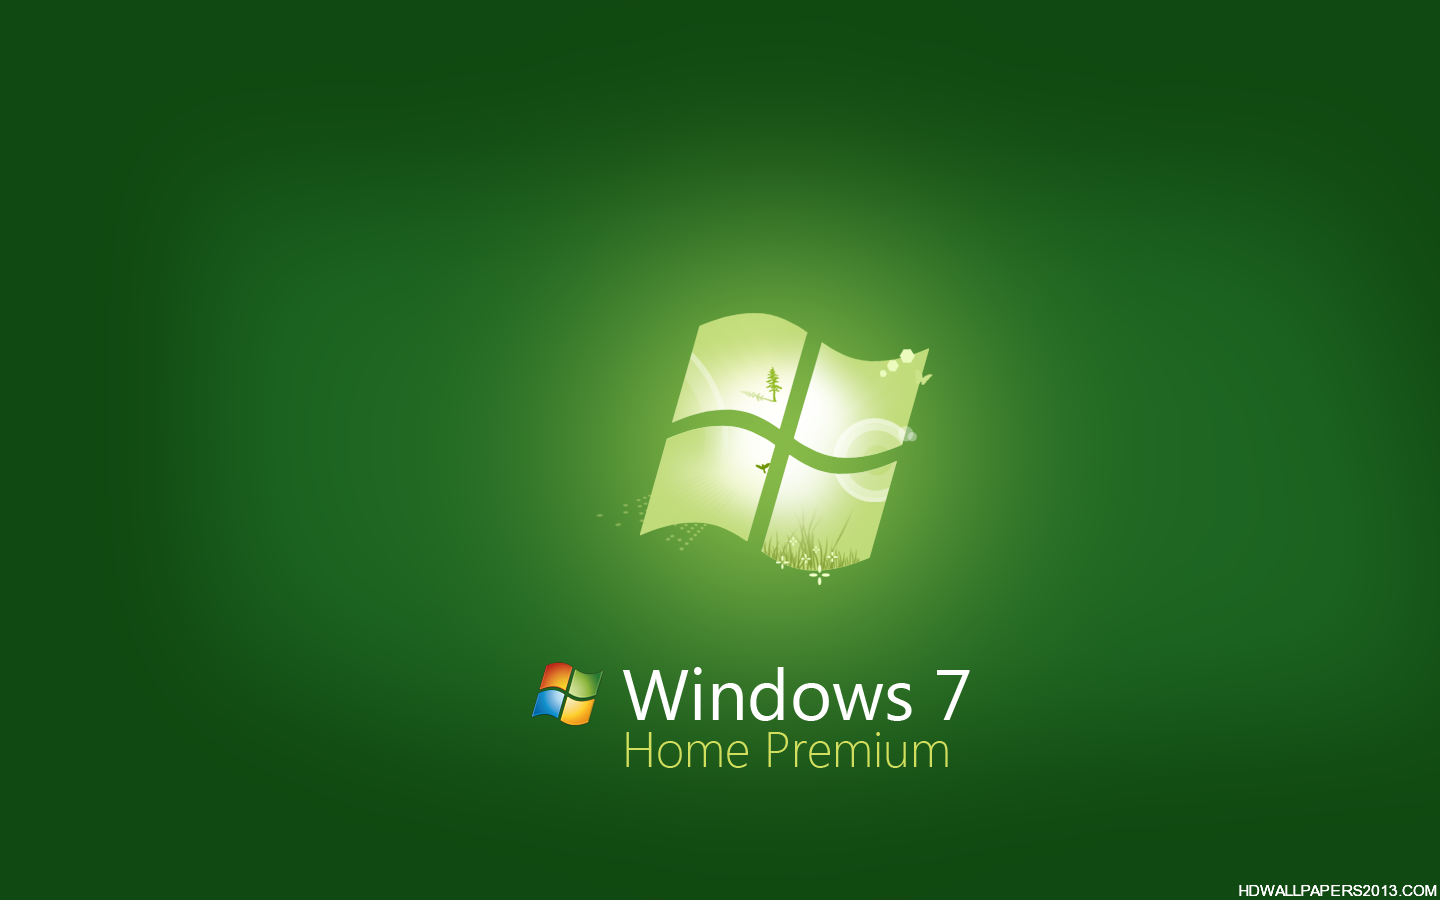 Gam màu xanh lá cây nhẹ nhàng và tươi mát của hình nền Windows 7 trên trang Wallpaper Cave sẽ làm cho bạn cảm thấy thật dễ chịu và thoải mái khi thực hiện công việc với chiếc máy tính của mình. Hãy thỏa sức khám phá và chọn lựa những bức hình đẹp trên trang của chúng tôi để trang trí cho màn hình của bạn nào!